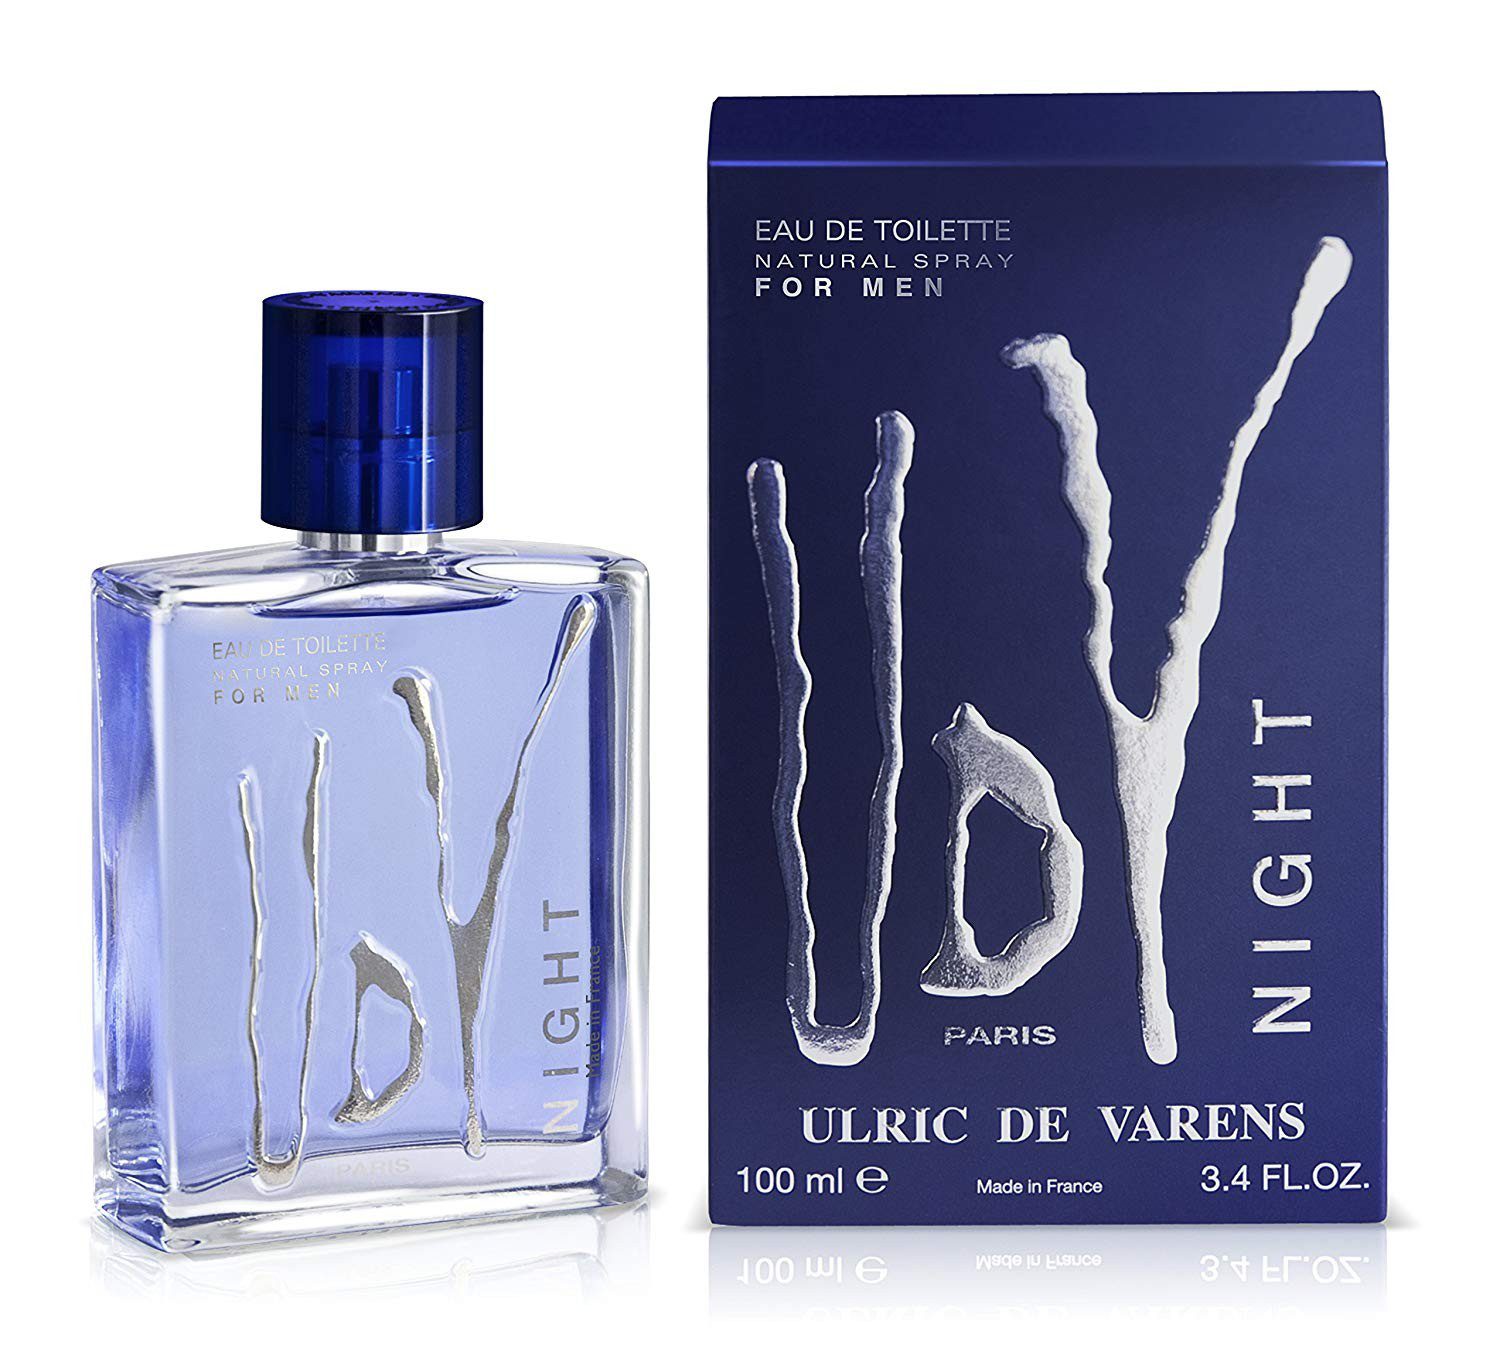 UDV Ulric De Varens Night Homme Natural Spray Eau de Toilette 100 ml